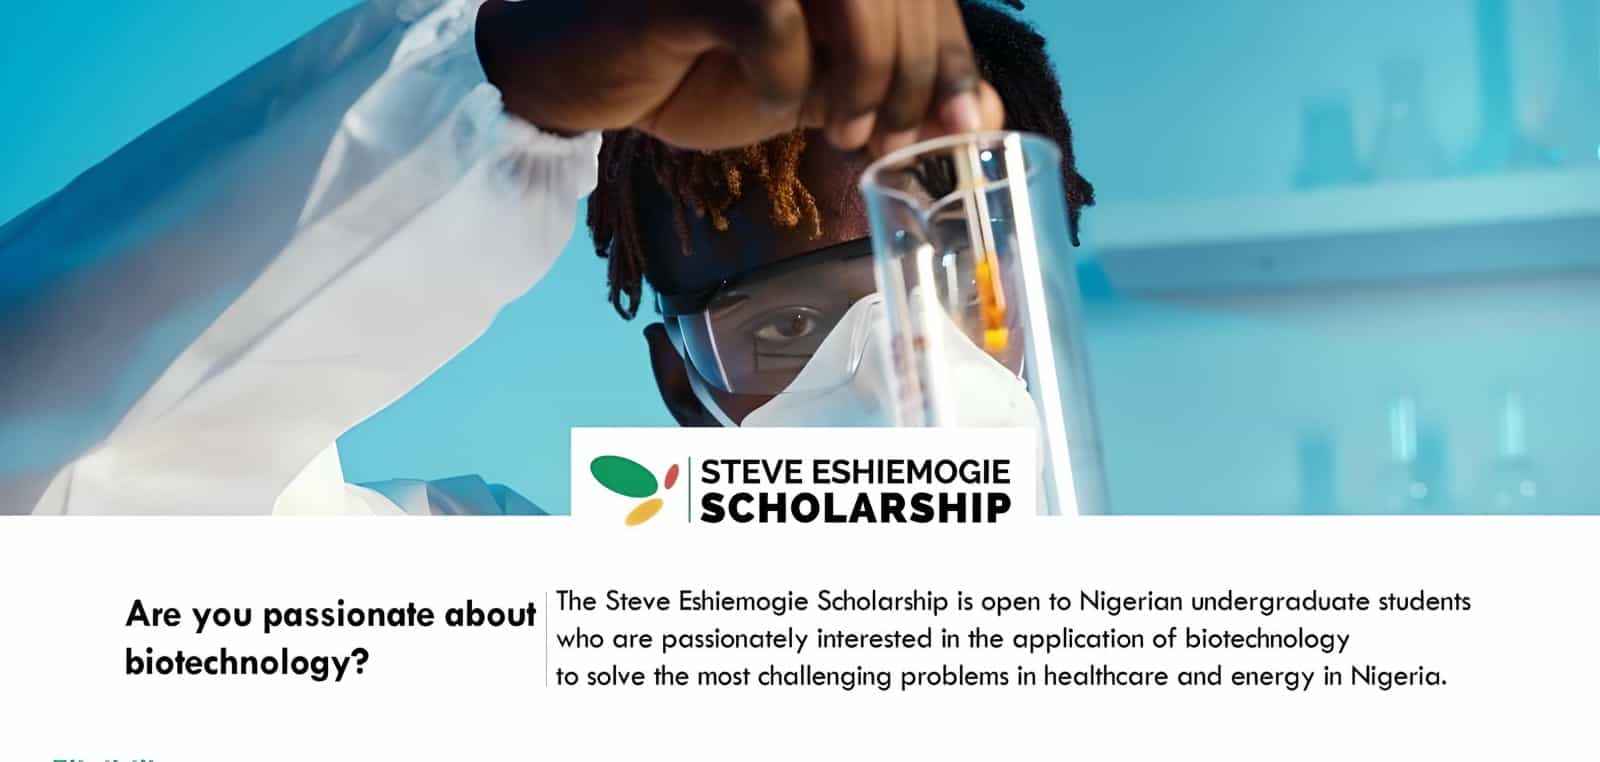 Steve Eshiemogie Scholarship